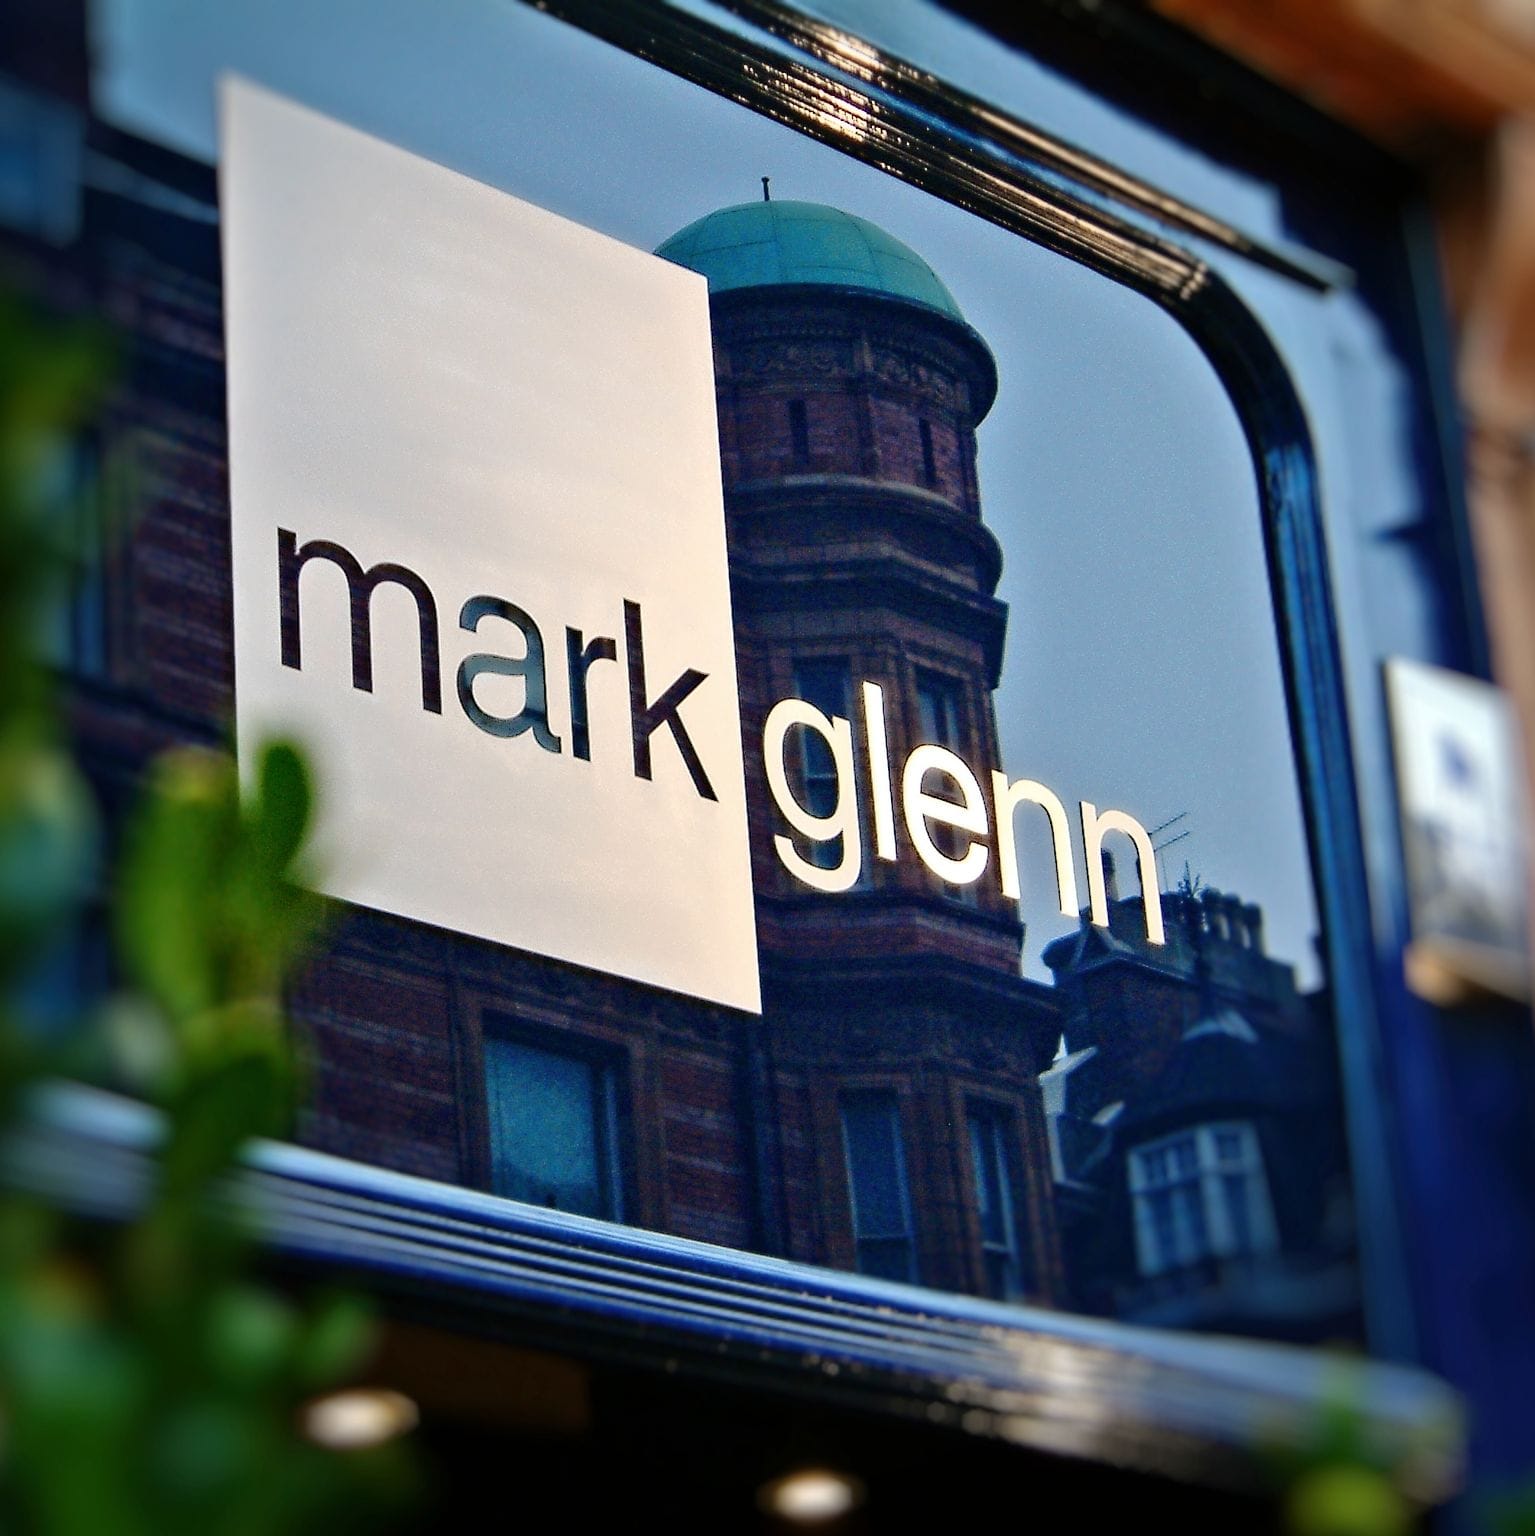 Mark Glenn exterior sign in Mayfair's Mount Street, London, 2005